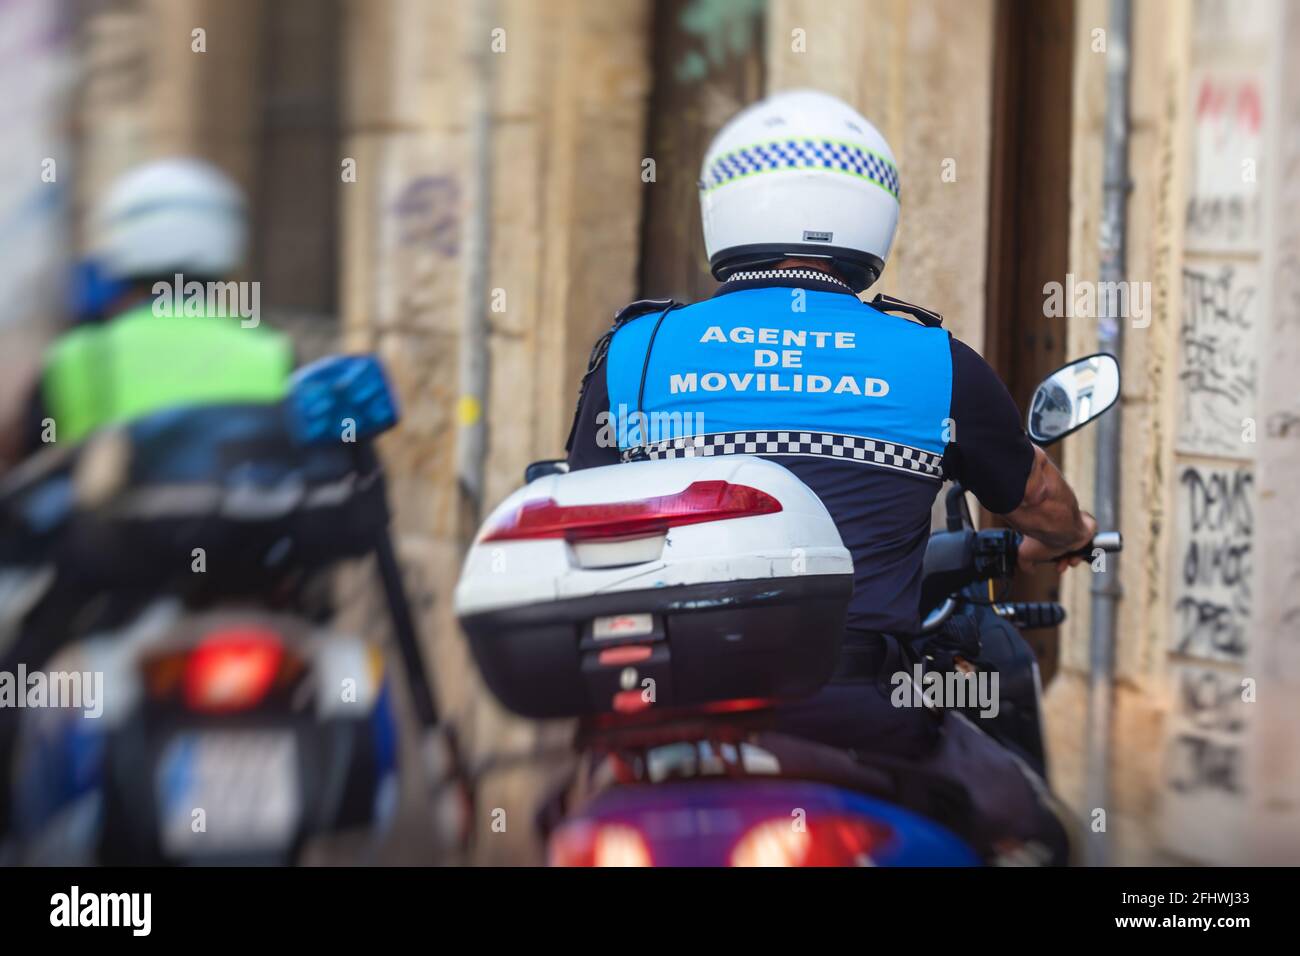 Spanische Polizeigruppe Formation auf Fahrrad und Motorrad Rückansicht Mit dem Logo „Local Police“ auf Uniform, um die öffentliche Ordnung zu erhalten In den Straßen von Ali Stockfoto